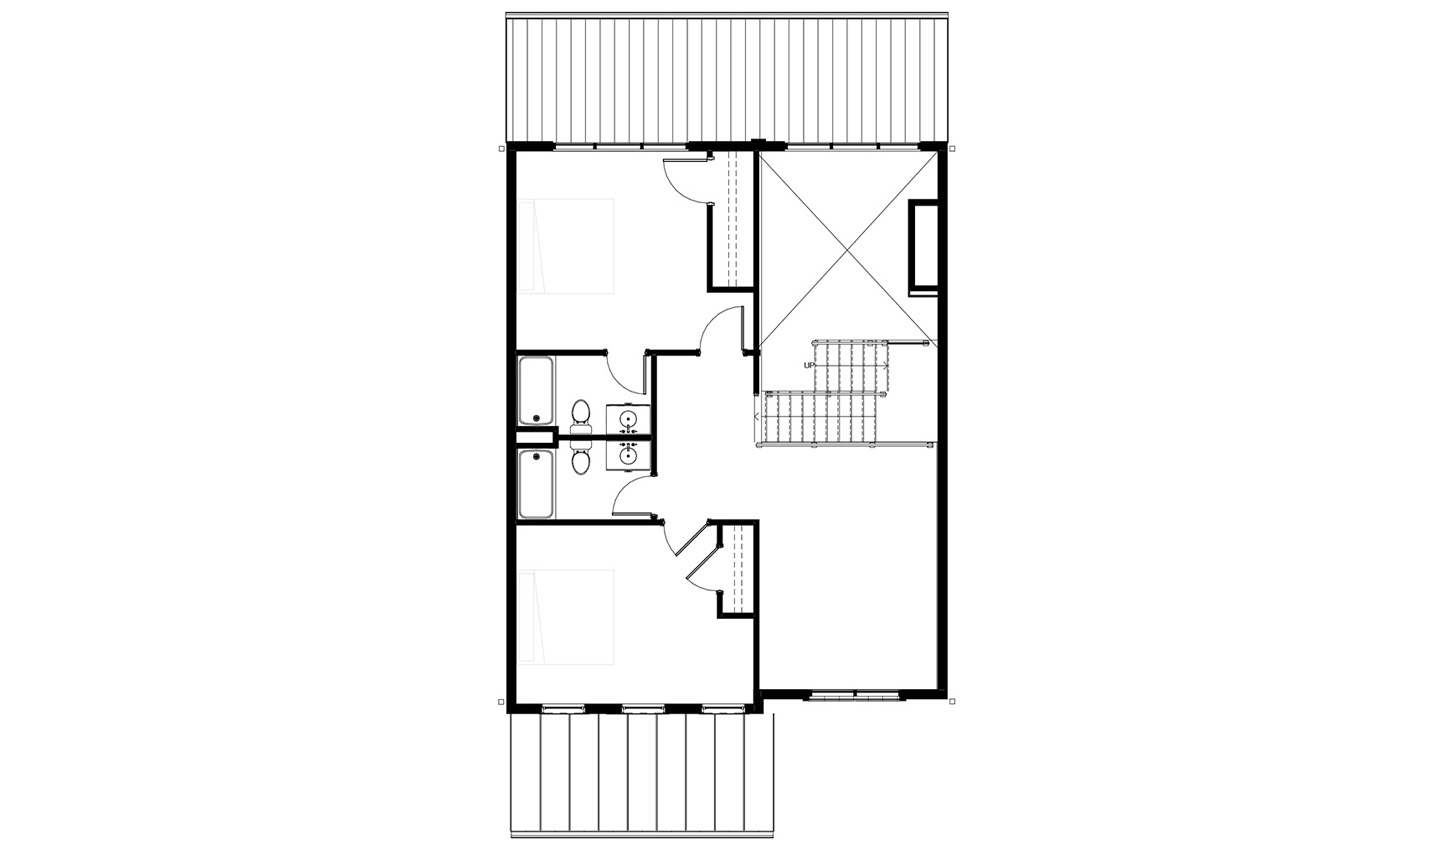 Floor plan of the 4 bedroom upper level floor plan